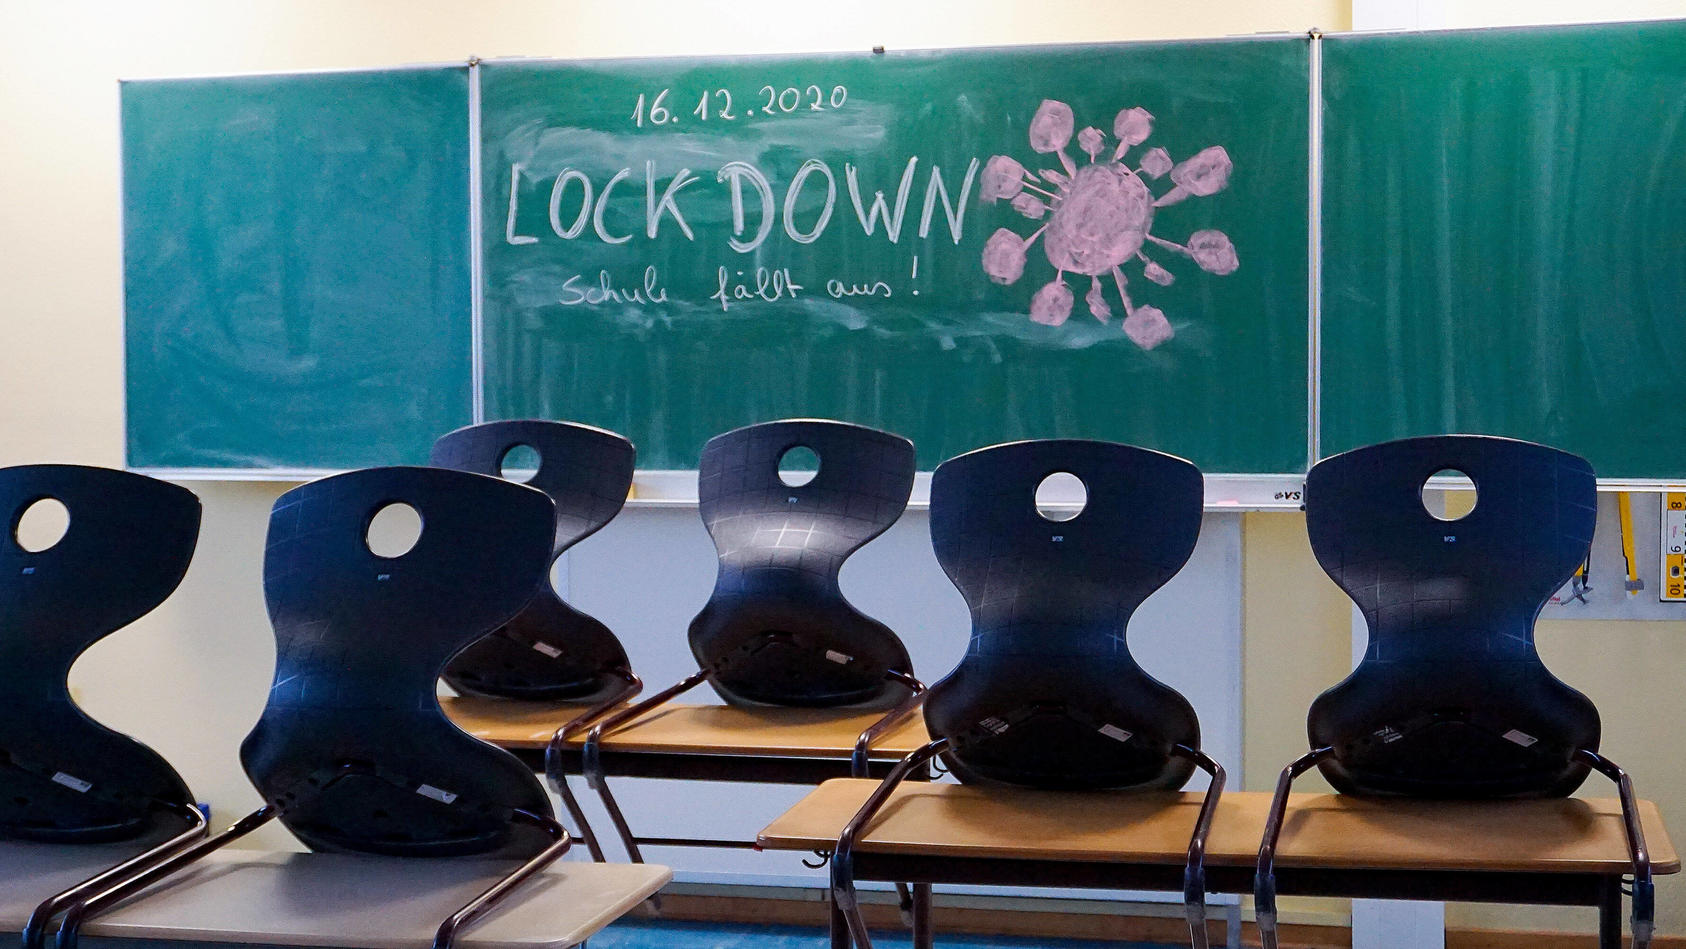 Das Wort "Lockdown" ist Anglizismus des Jahres